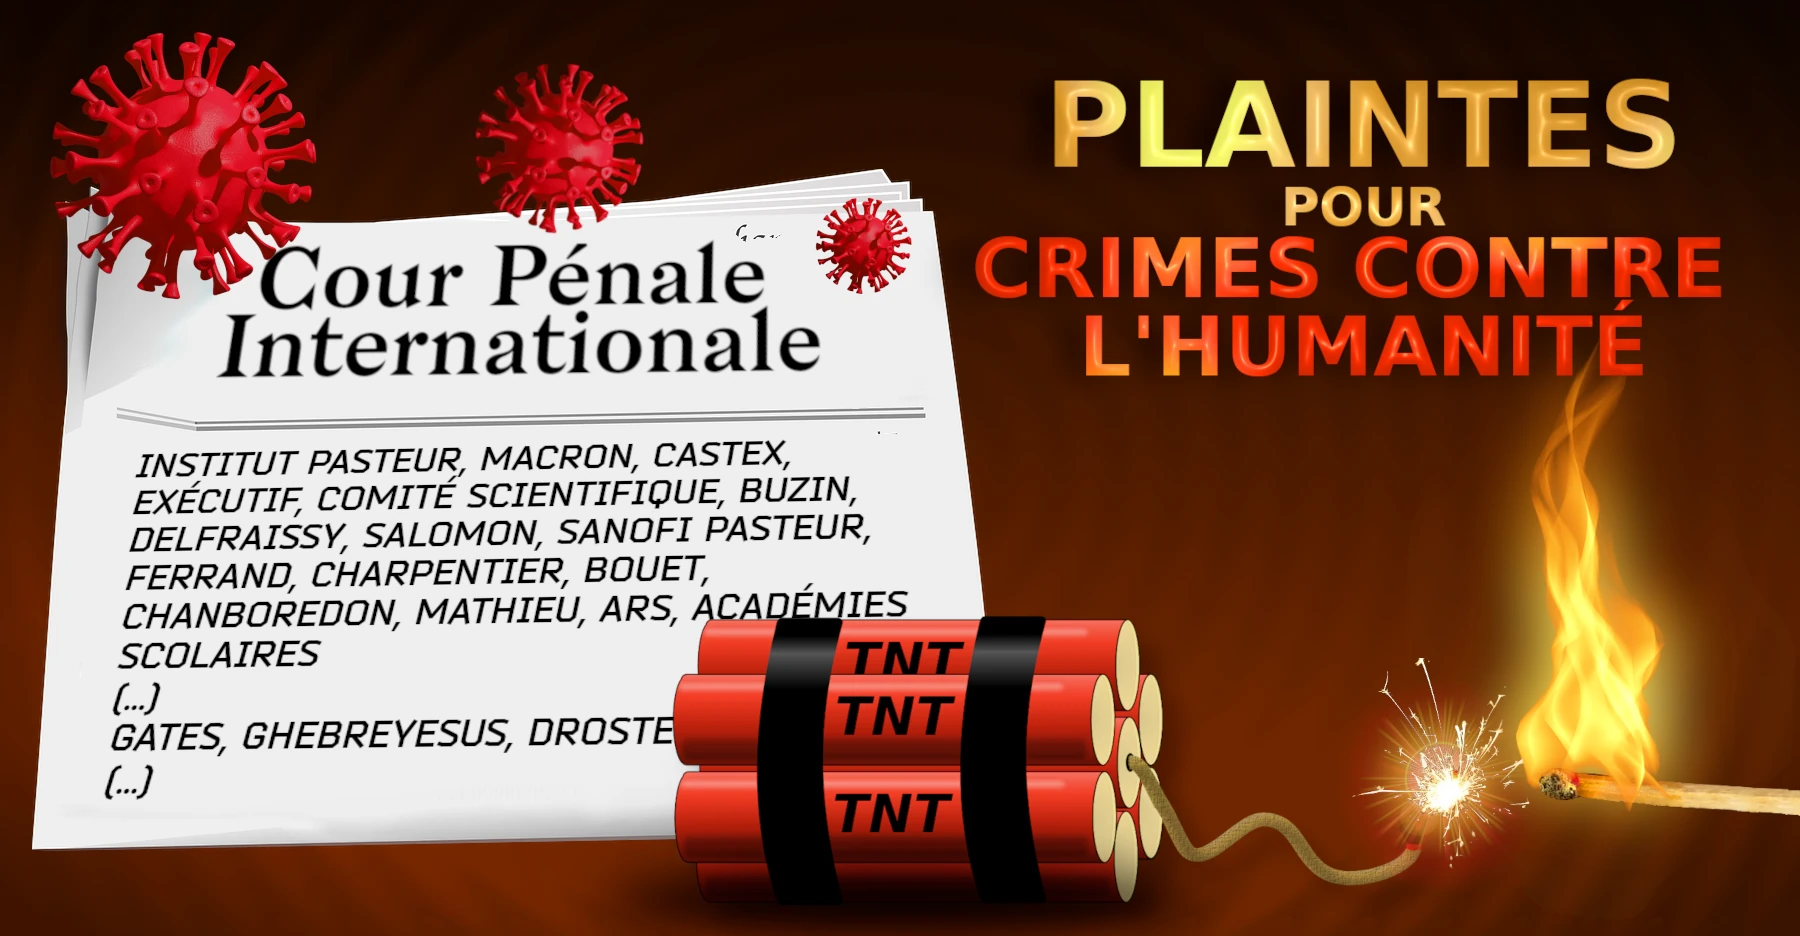 PLAINTES POUR CRIMES CONTRE L'HUMANITÉ